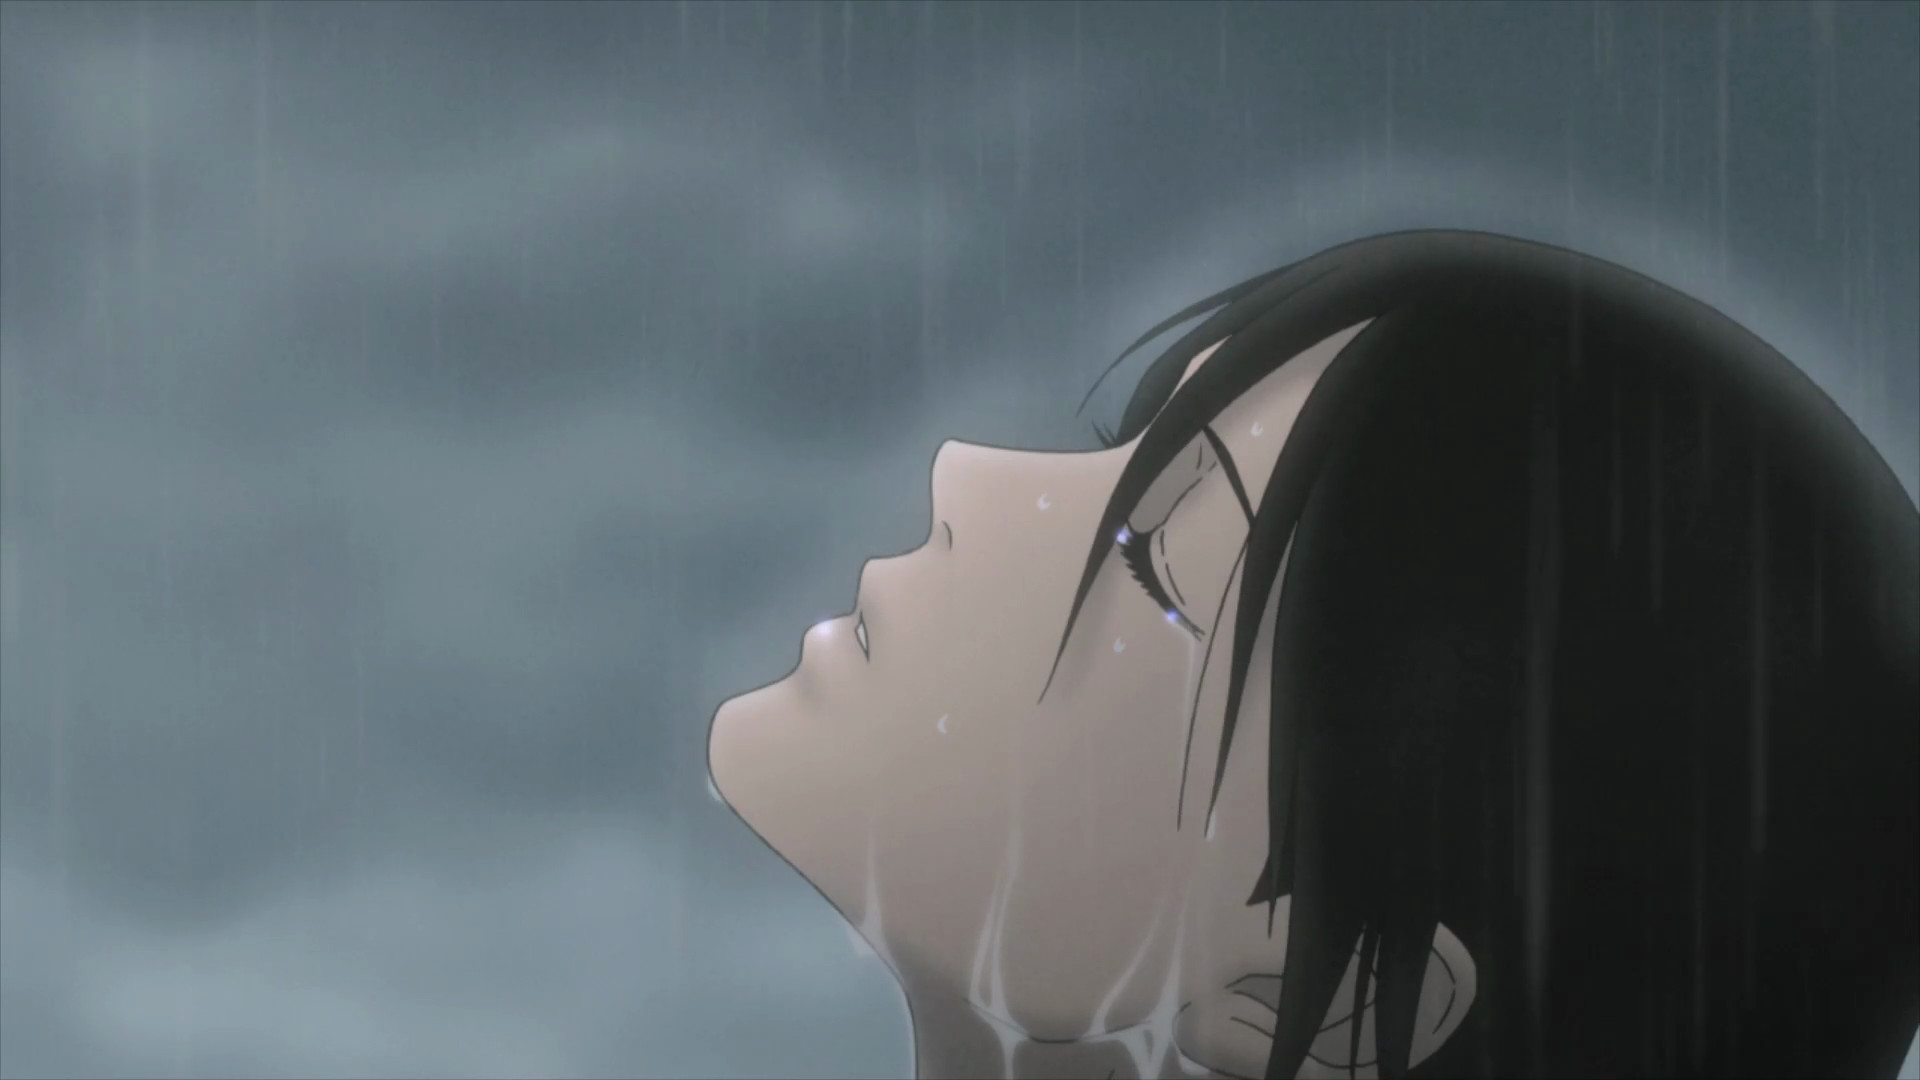 Hình nền anime chàng trai rất cô đơn dưới cơn mưa này